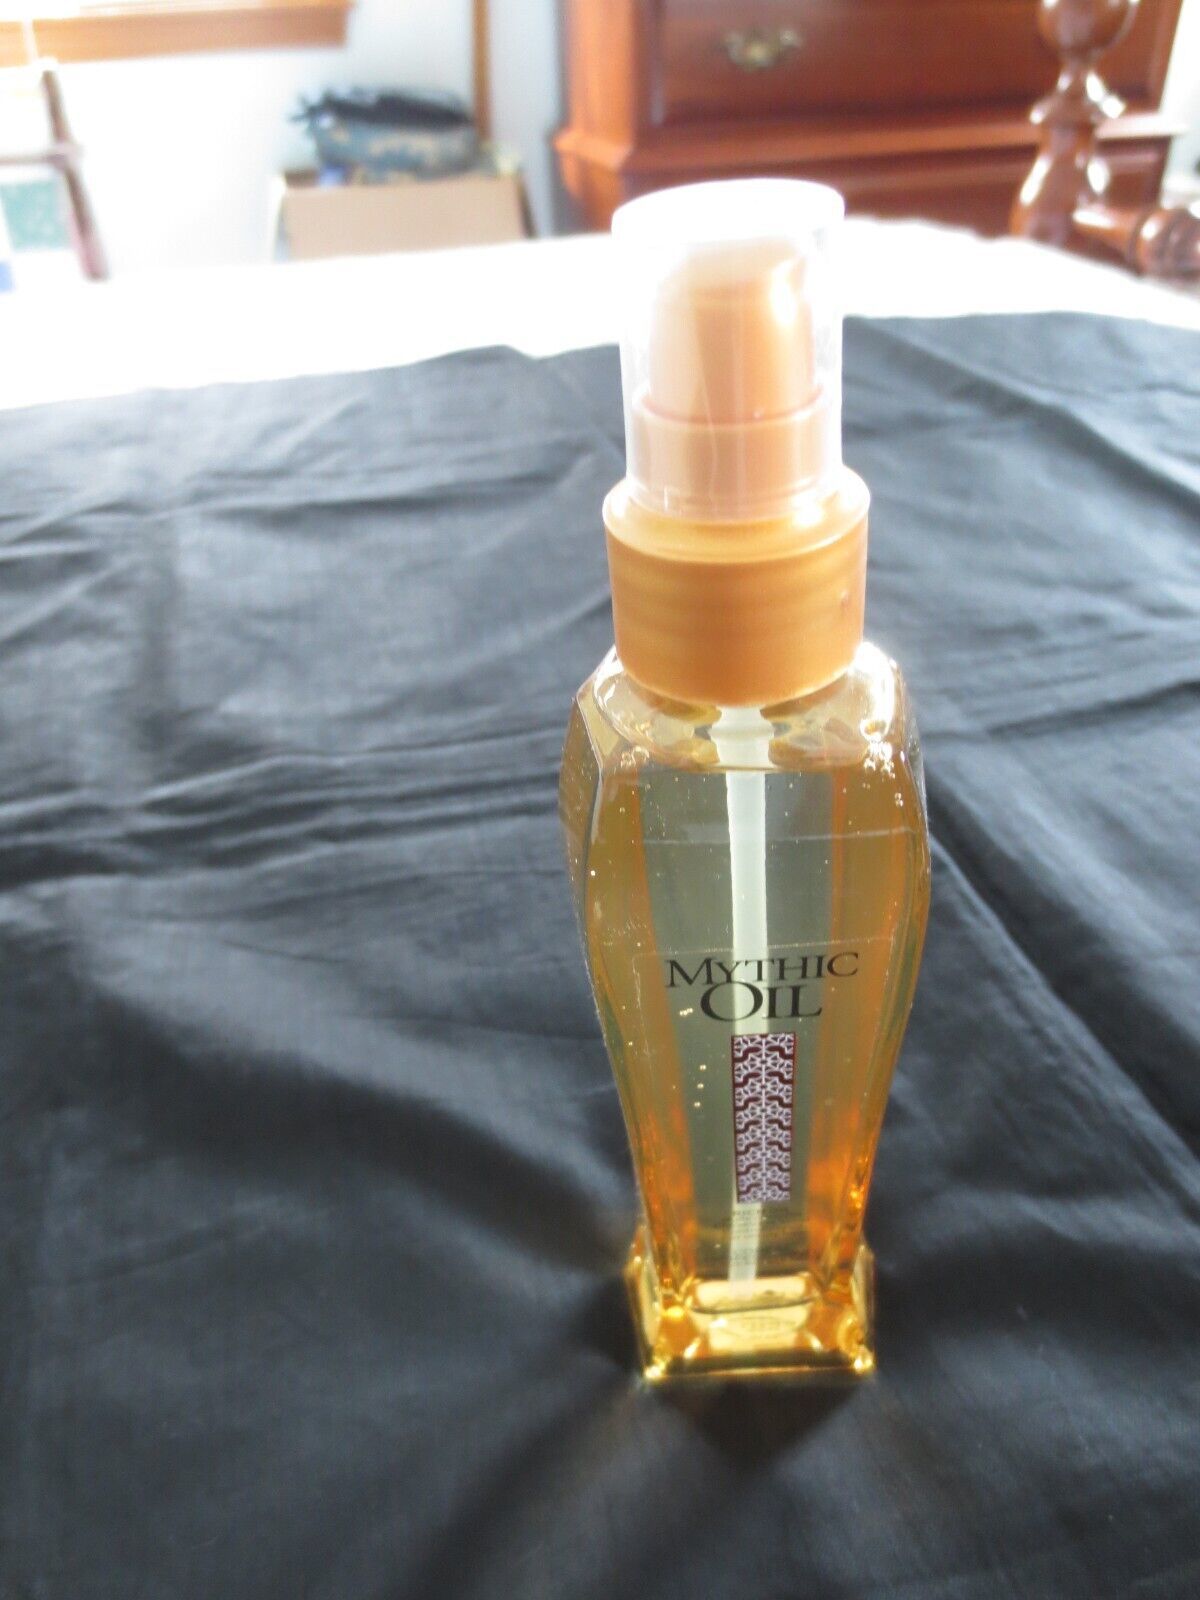 NIB 3.4 fl. oz. L'OREAL PROFESSIONNEL Controlling MYTHIC OIL for Unruly Hair - $18.00